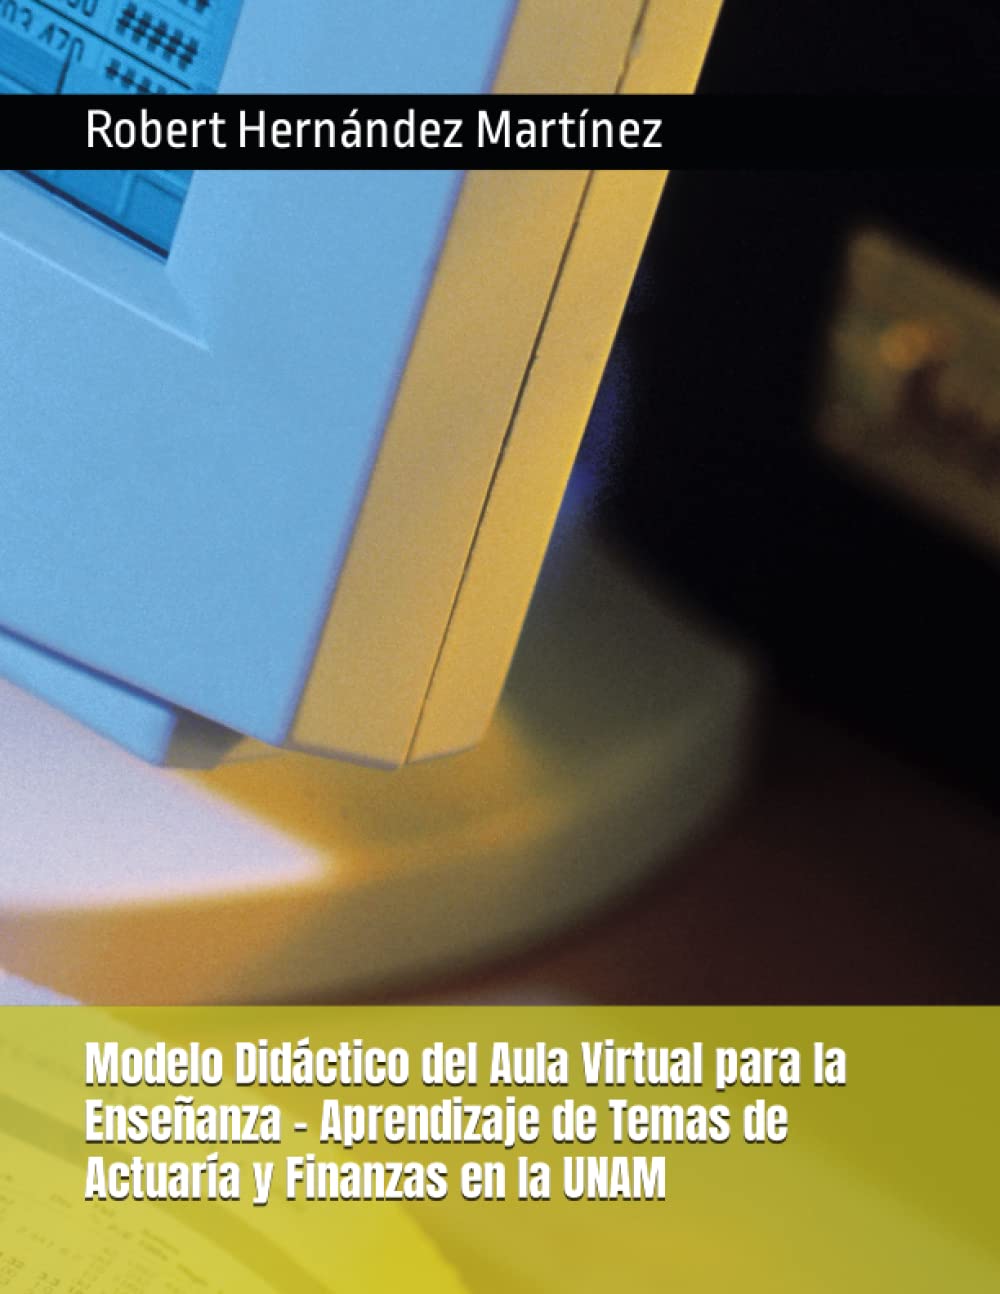 Modelo Didáctico del Aula Virtual para la Enseñanza - Aprendizaje de Temas de Actuaría y Finanzas en la UNAM